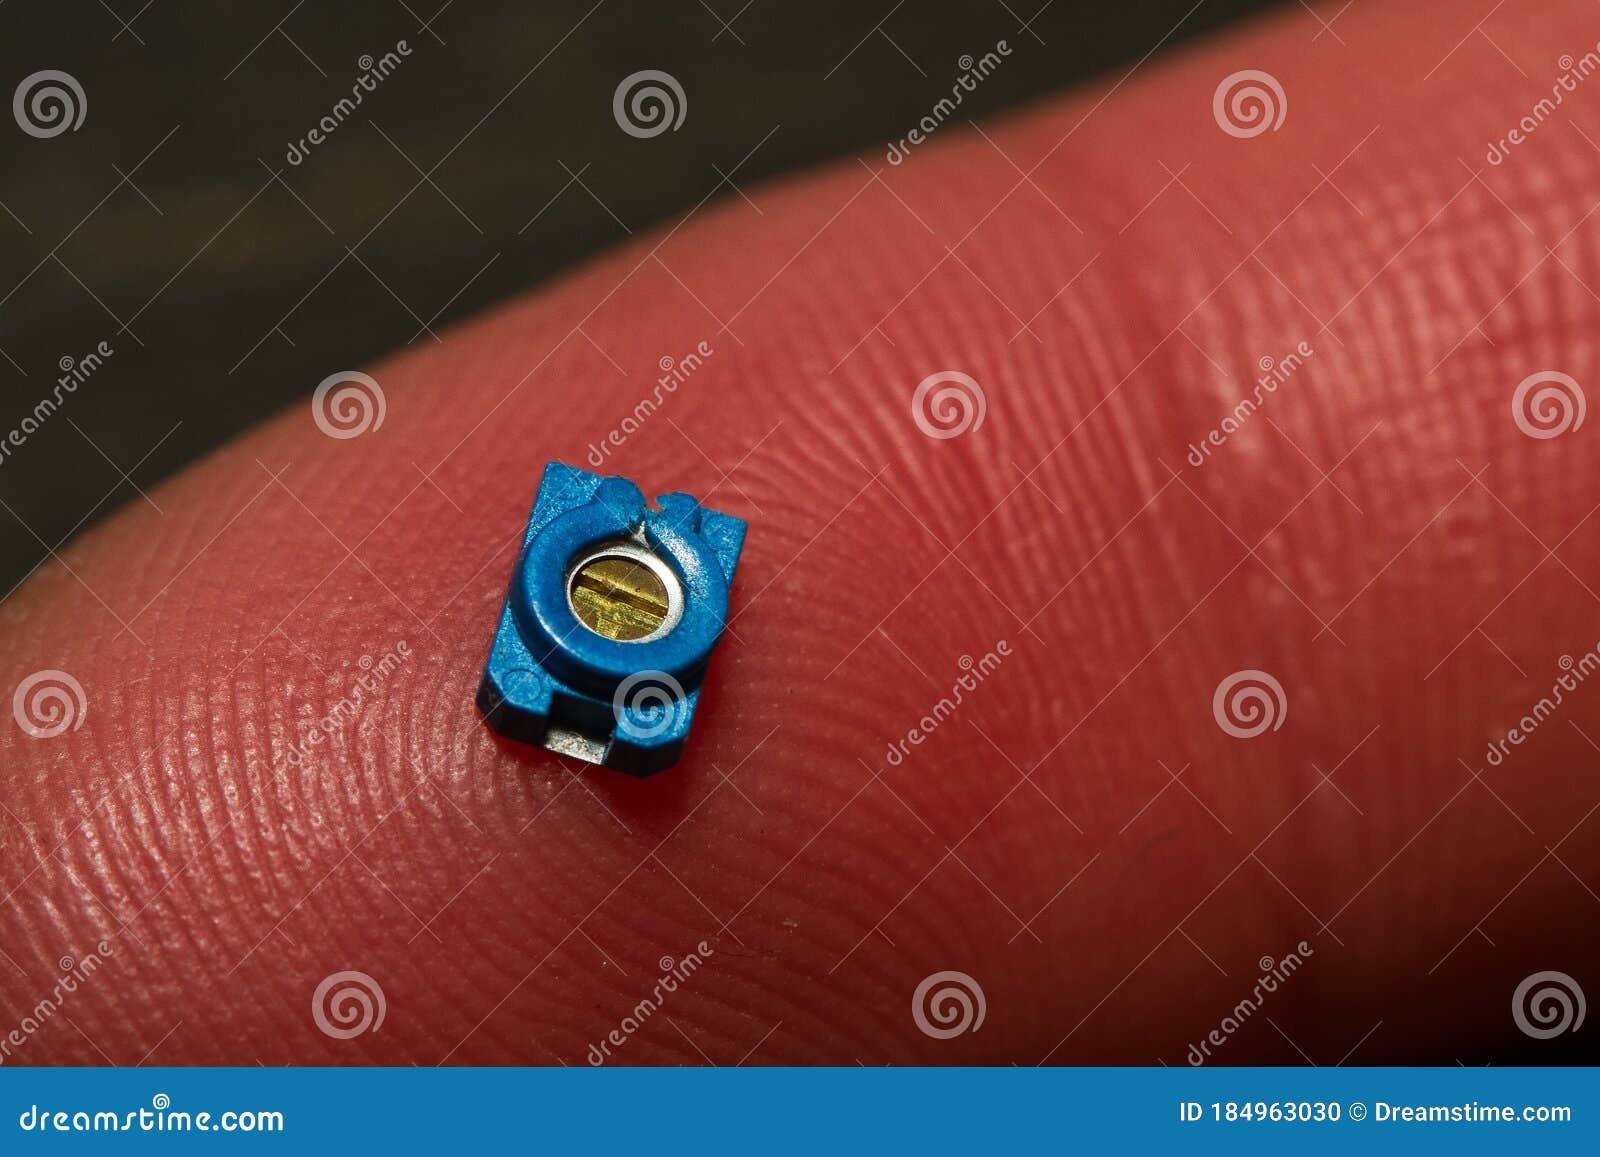 small smt trim pot resistor component on finger